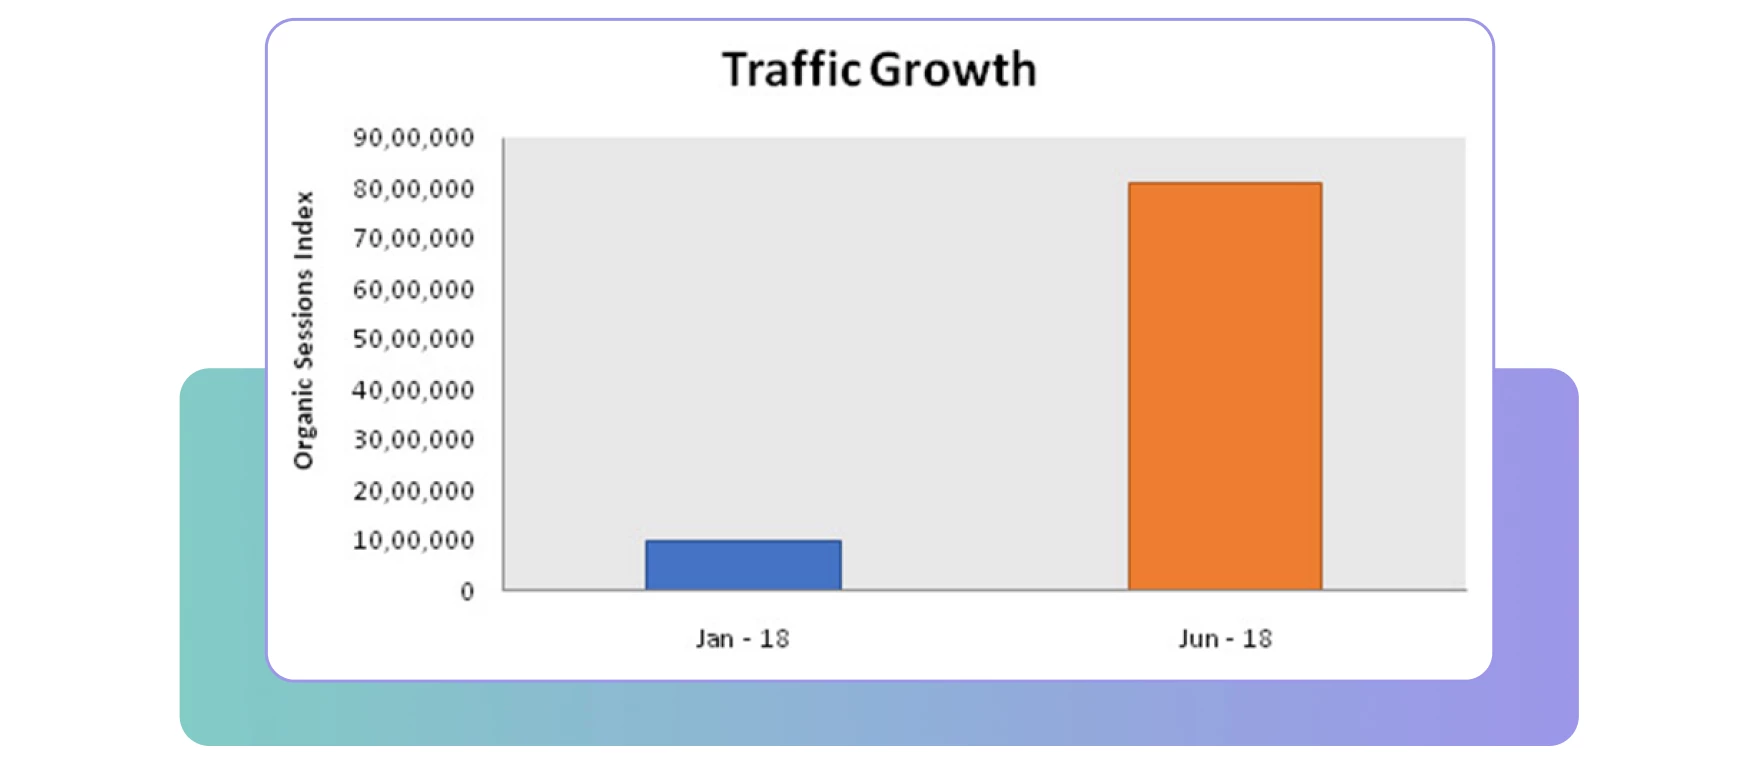 Traffic growth